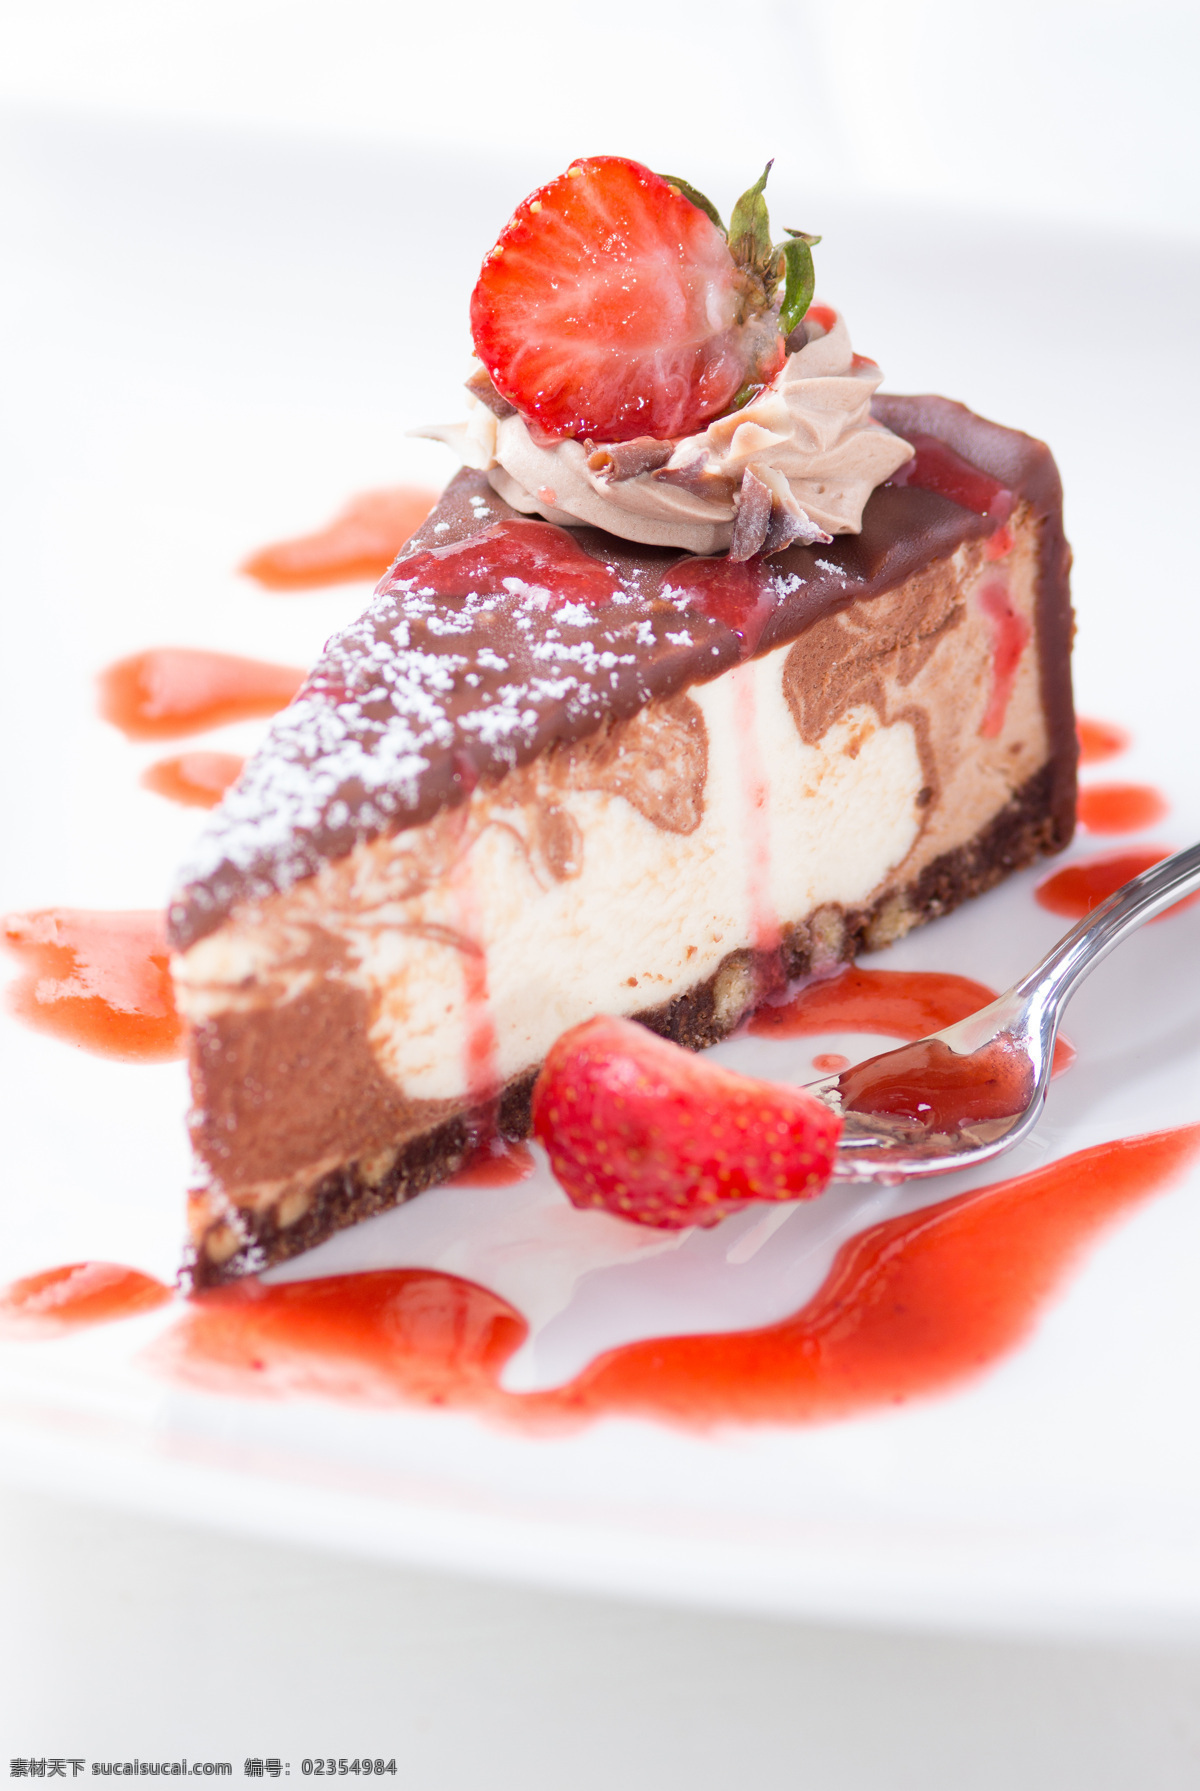 草莓 蛋糕 草莓蛋糕 甜心 水果 食物 餐厅美食 生日蛋糕图片 餐饮美食